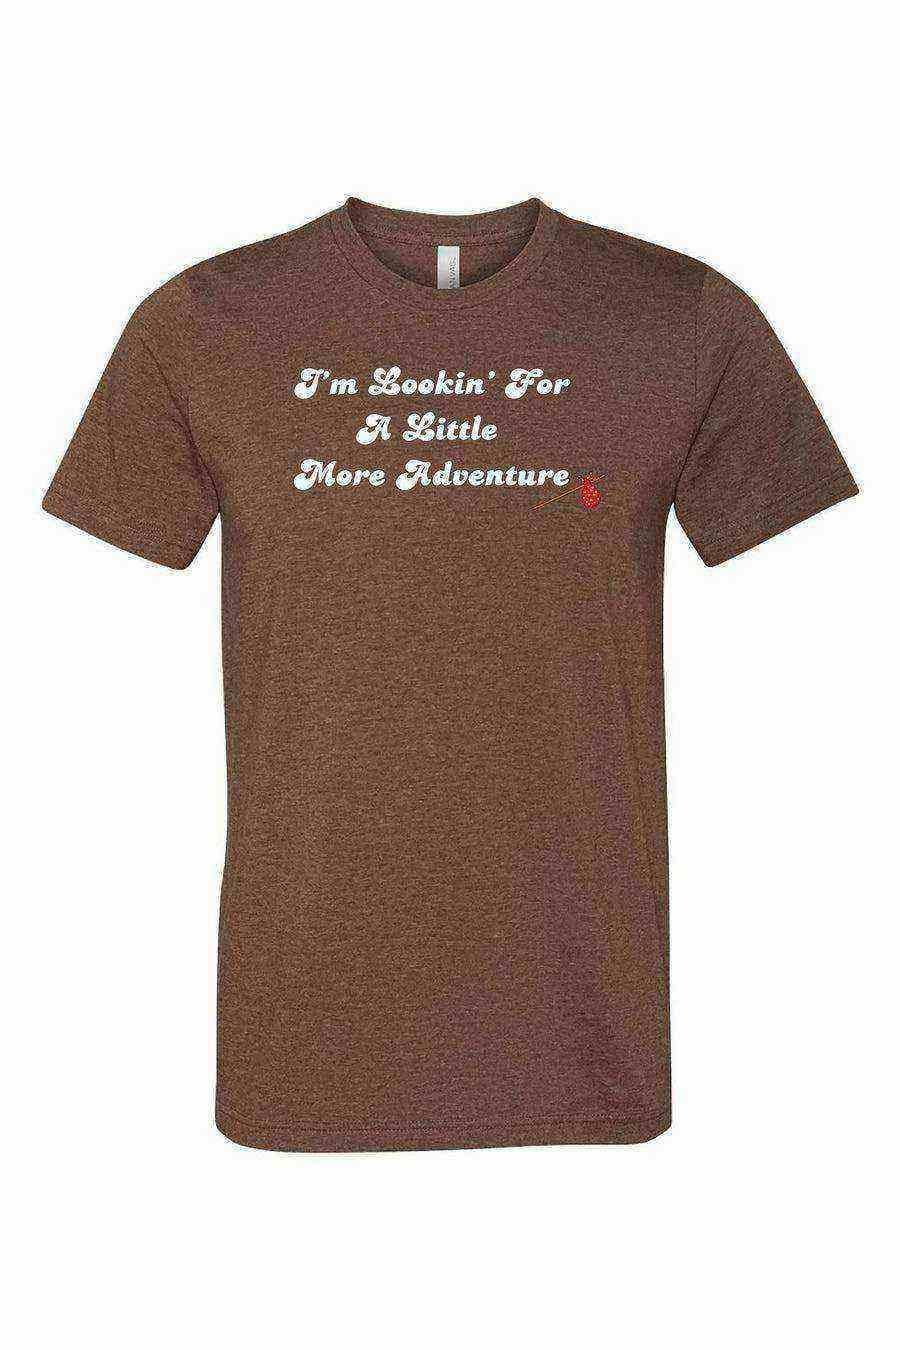 Toddler | Splash Mountain Shirt | Brer Rabbit Shirt | Im Lookin For A Little More Adventure Shirt - Dylan's Tees